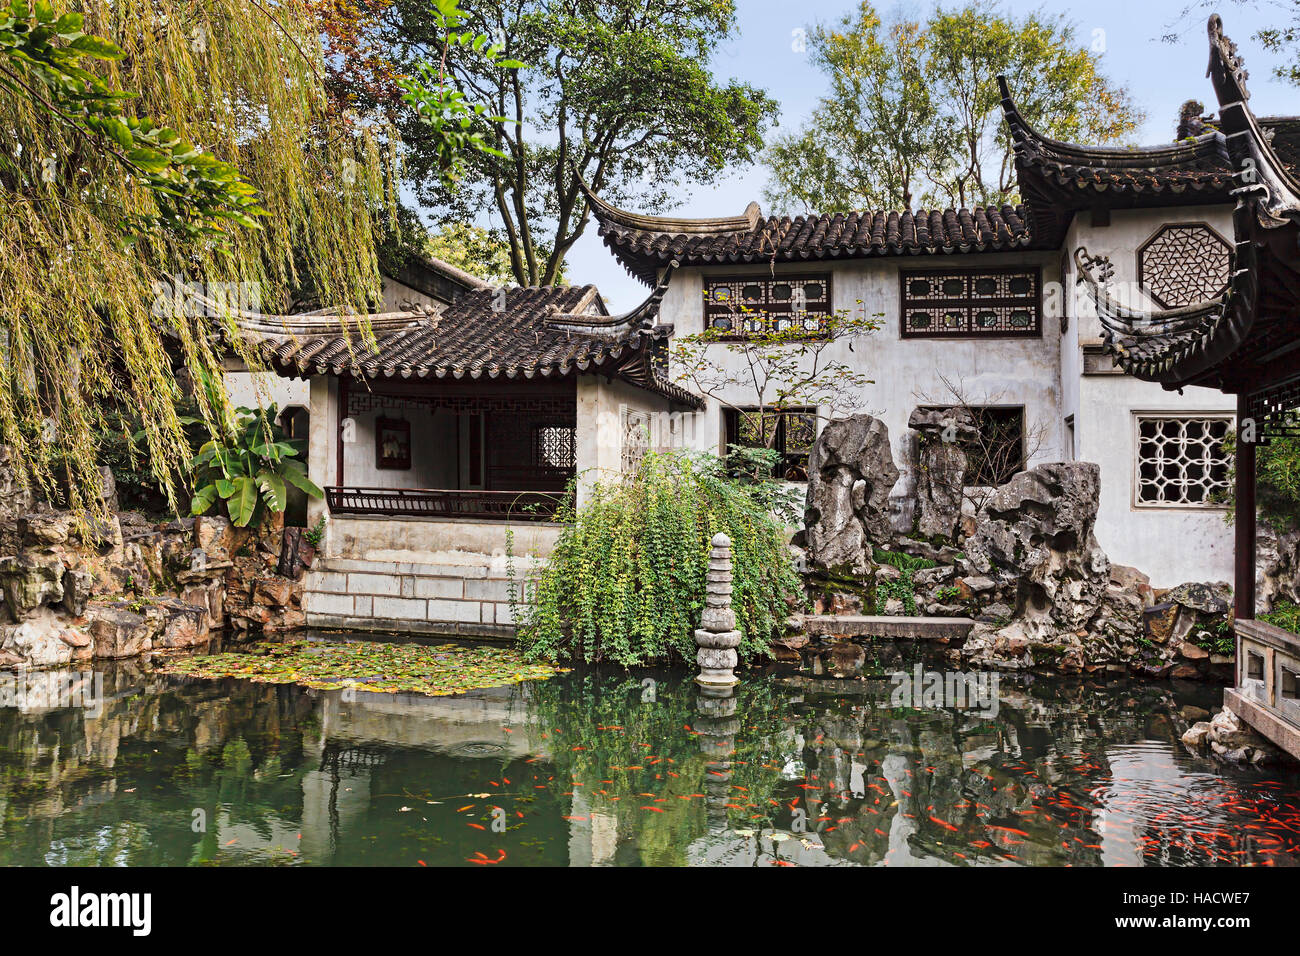 Formale cinese tradizionale giardino con padiglioni storici e tetti che riflette ancora in acque di stagno con red carp pesci. Foto Stock